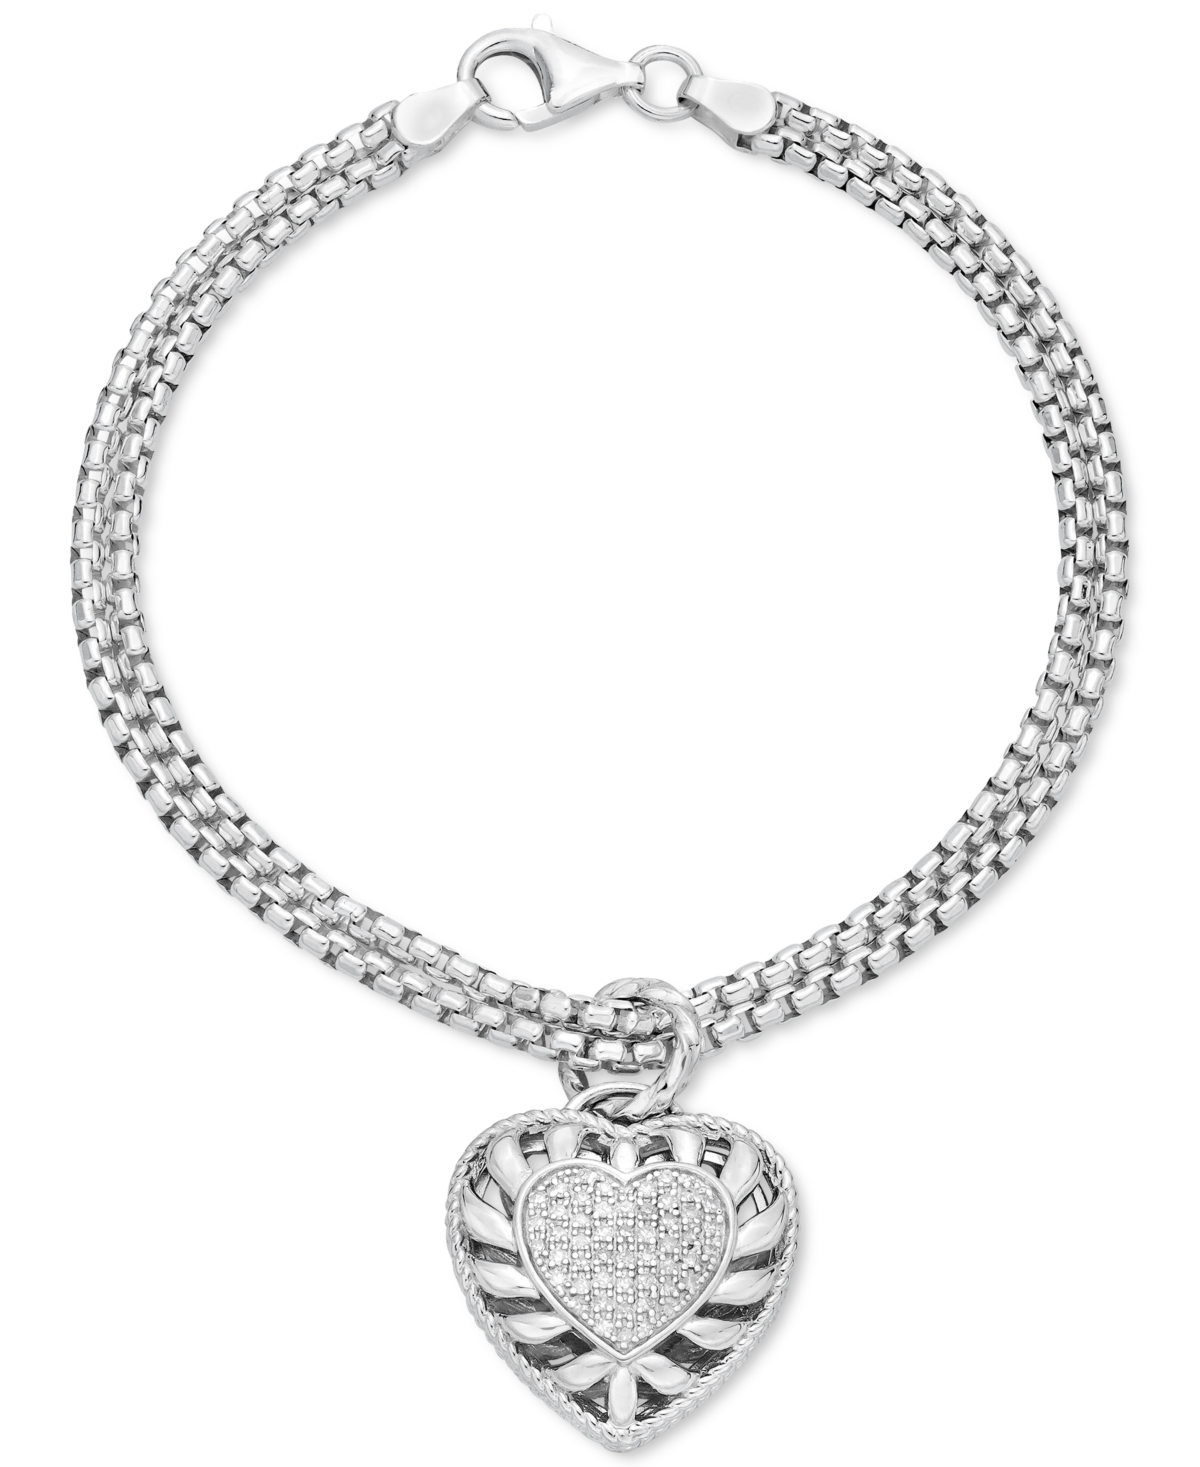 Diamond Heart Charm Bracelet (1/4 ct. t.w.) in Sterling Silver - Sterling Silver